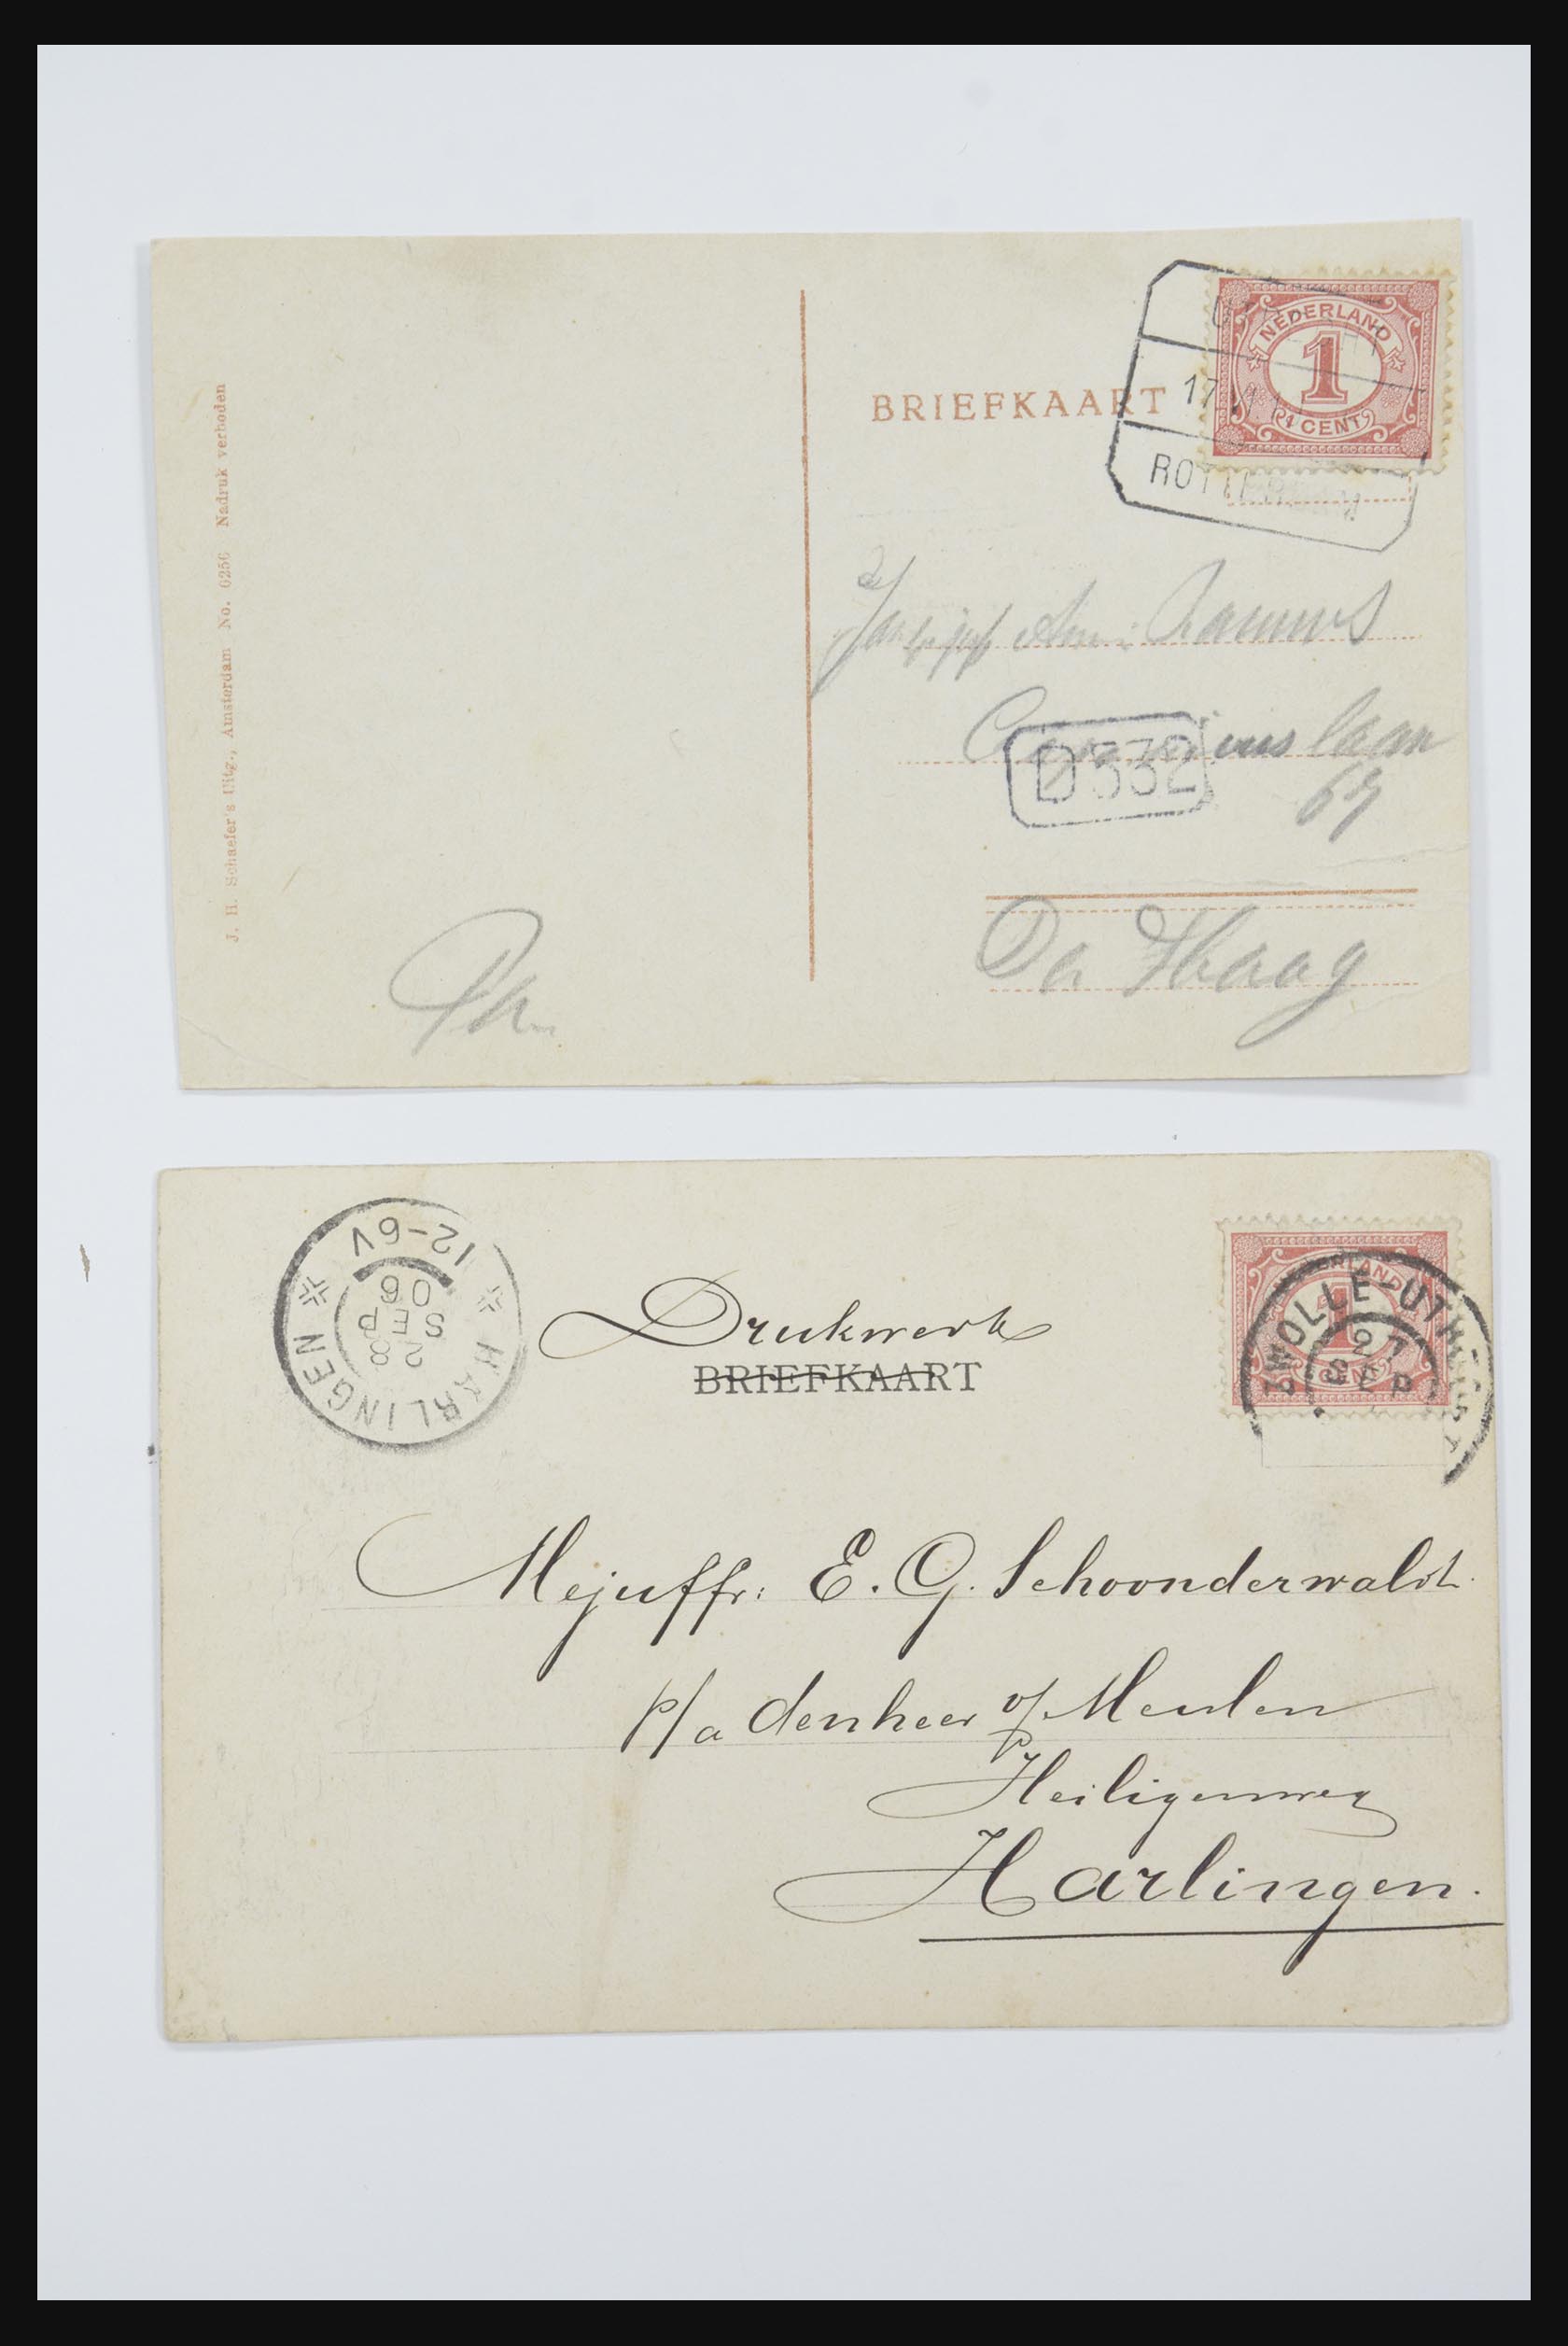 31668 004 - 31668 Nederland ansichtkaarten 1905-1935.